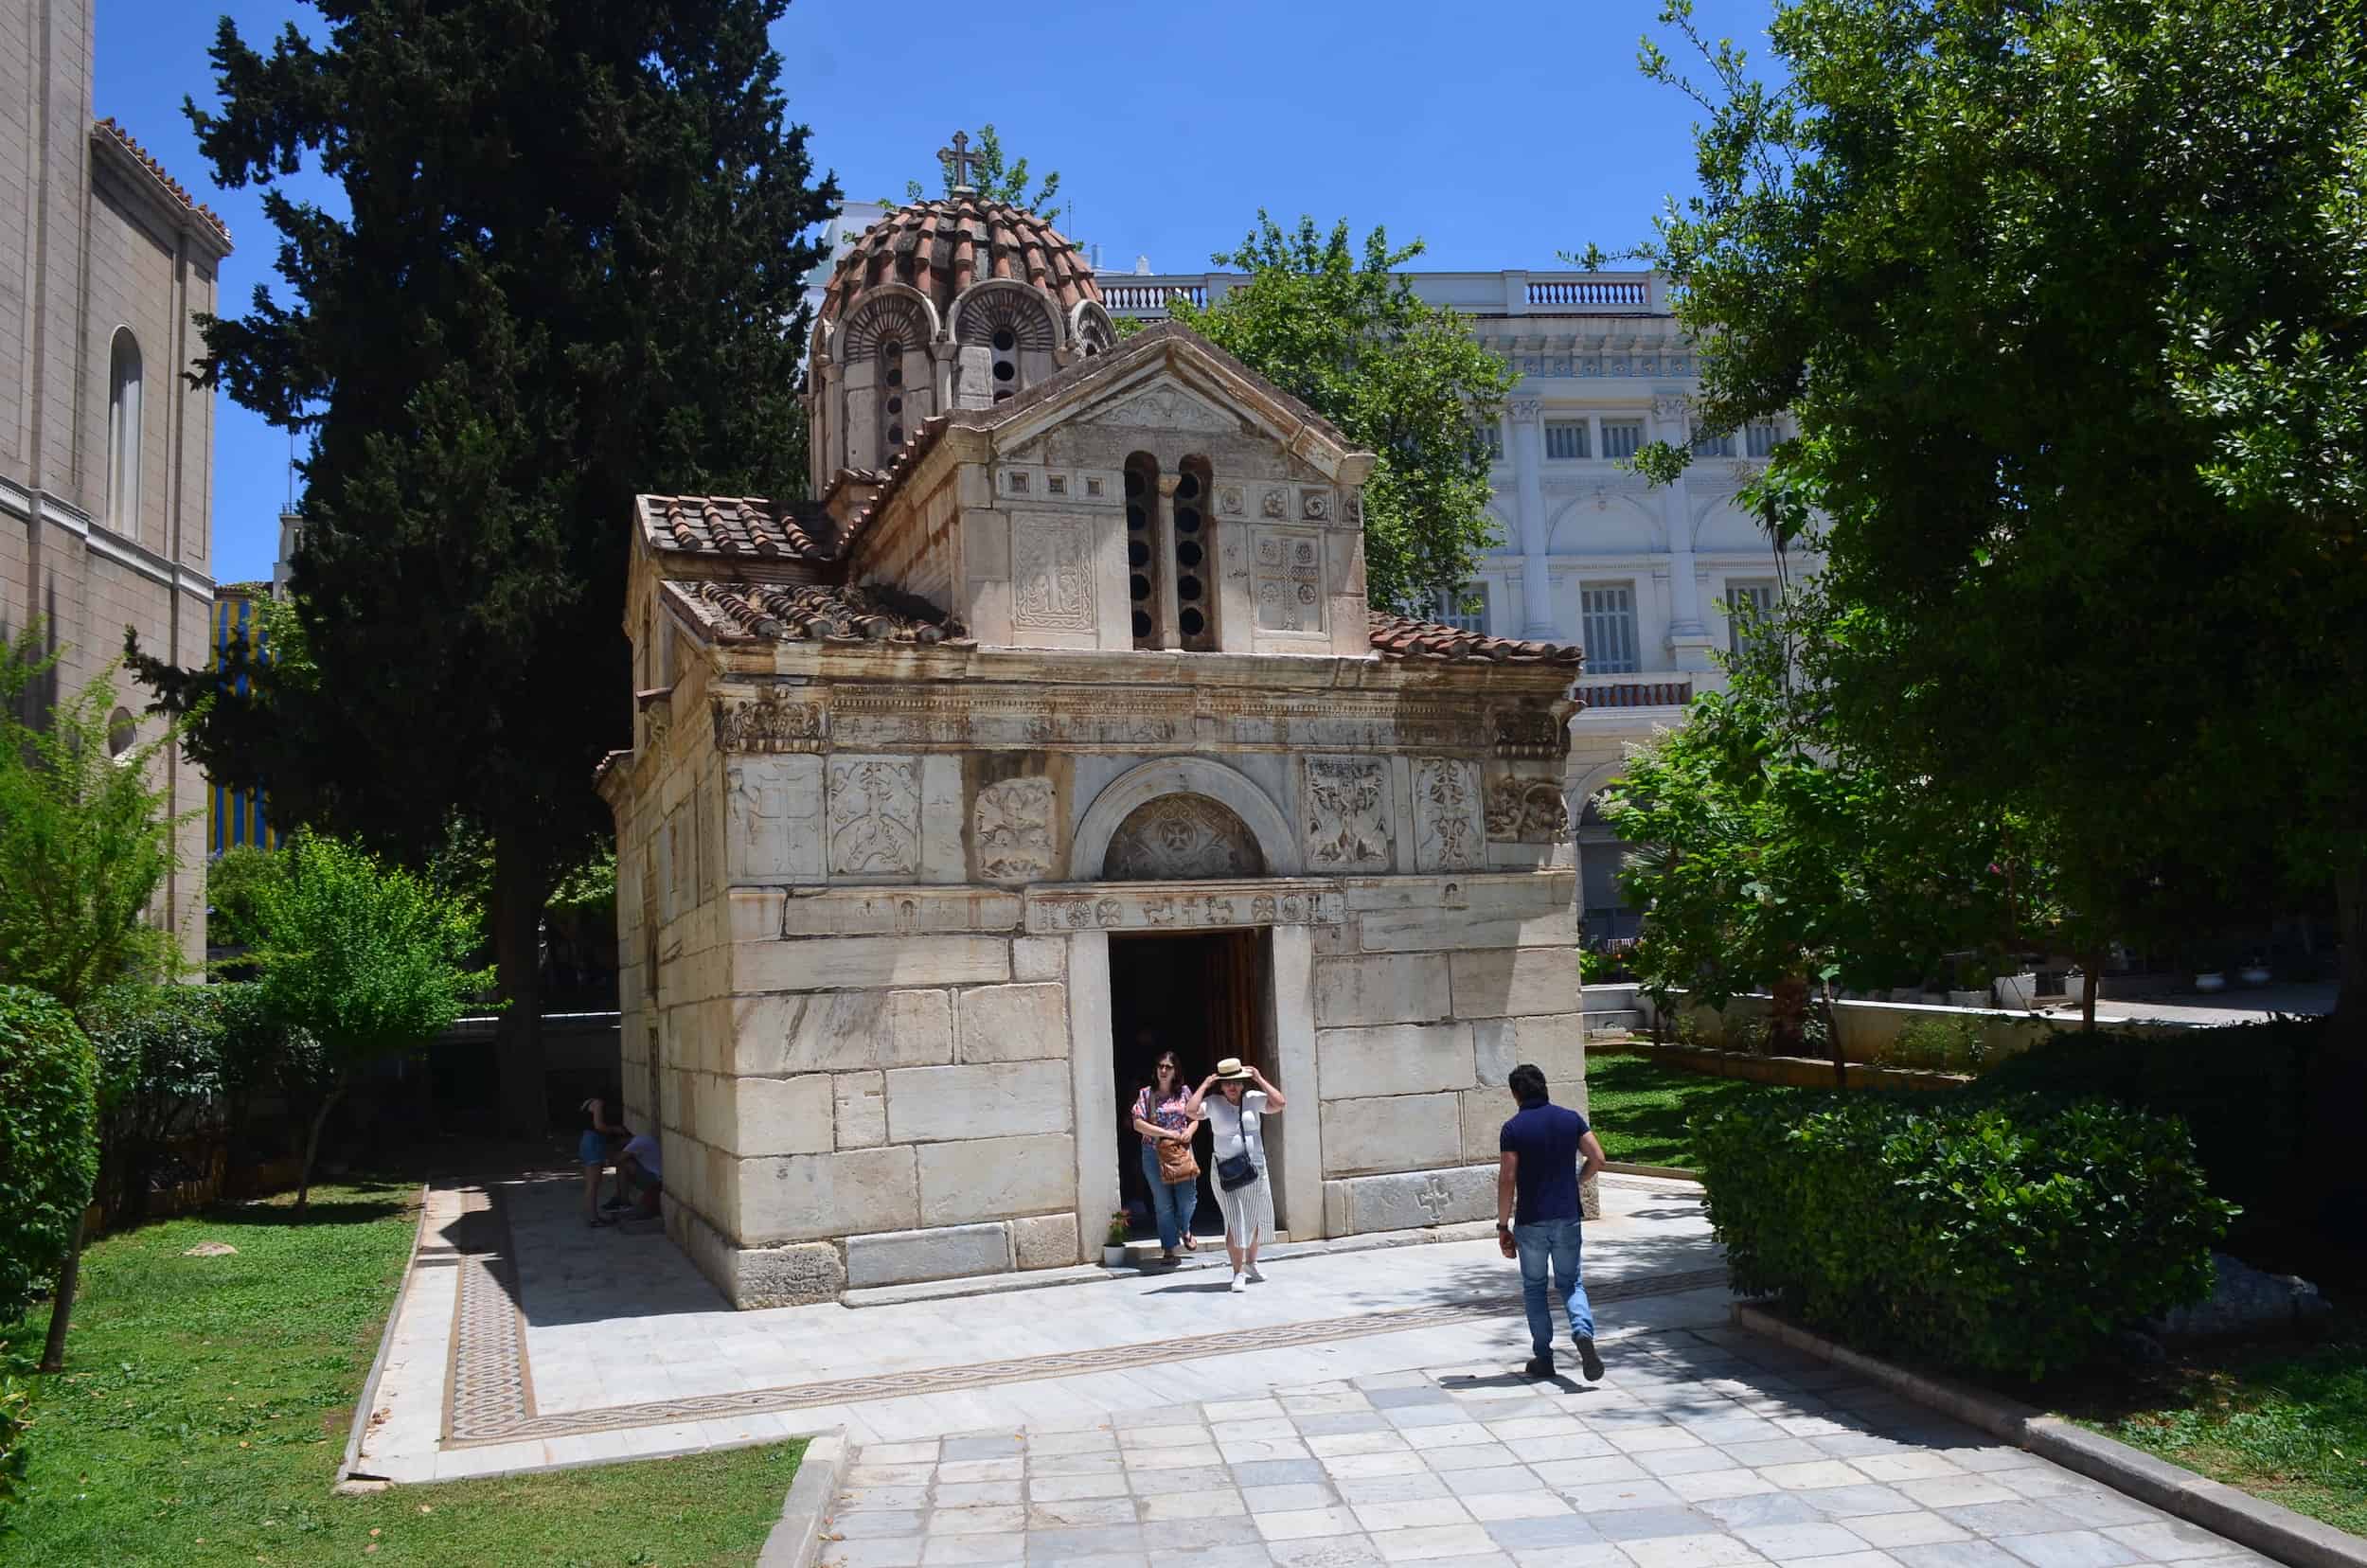 Panagia Gorgoepikoos on Mitropoleos Square in Monastiraki, Athens, Greece